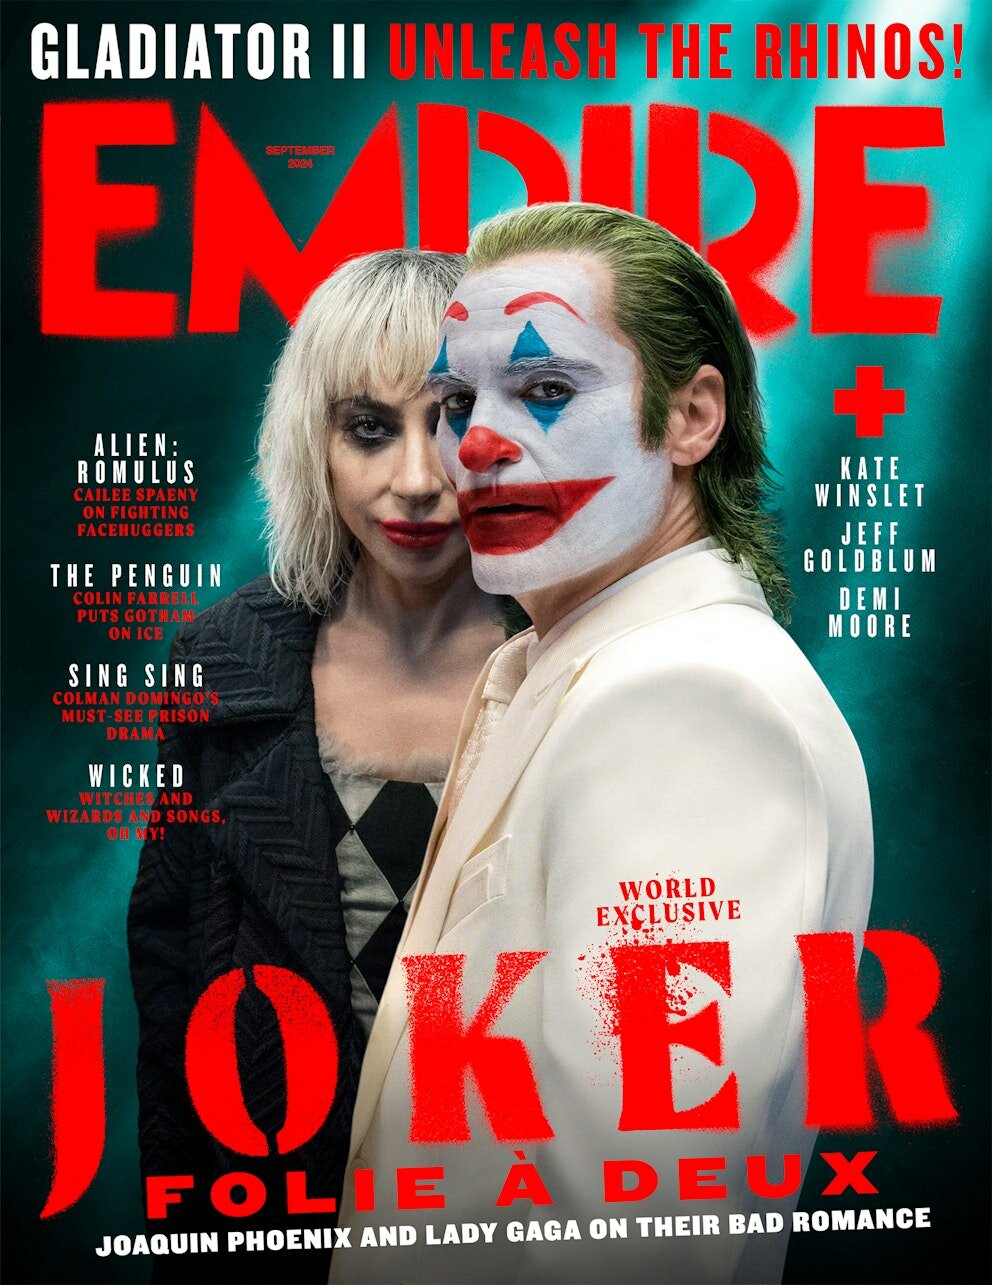 Безумие на двоих: новая обложка журнала Empire посвящена сиквелу «Джокера»